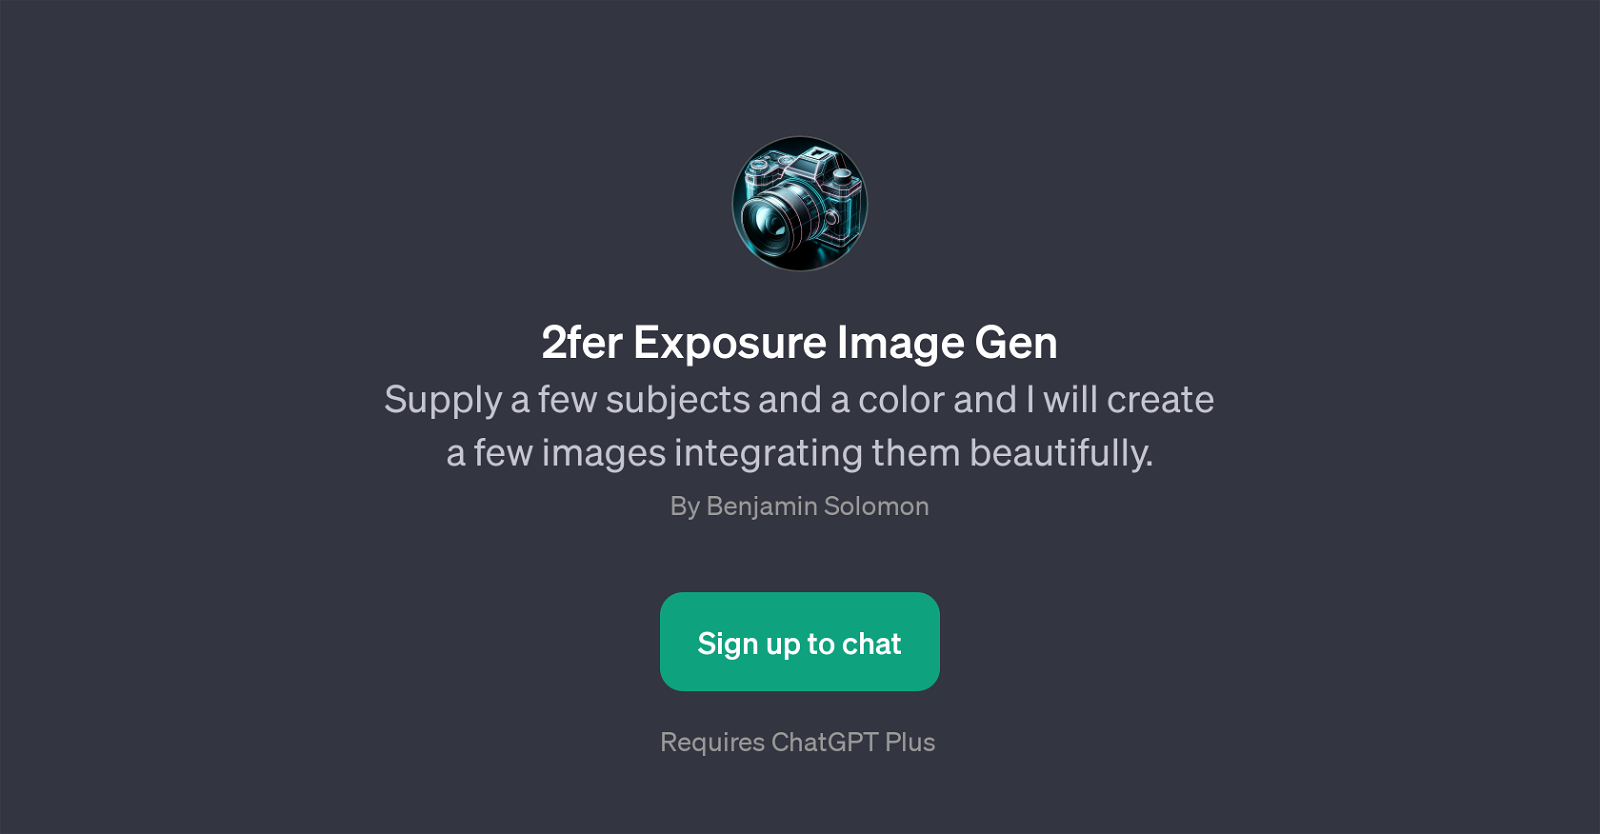 2fer Exposure Image Gen website